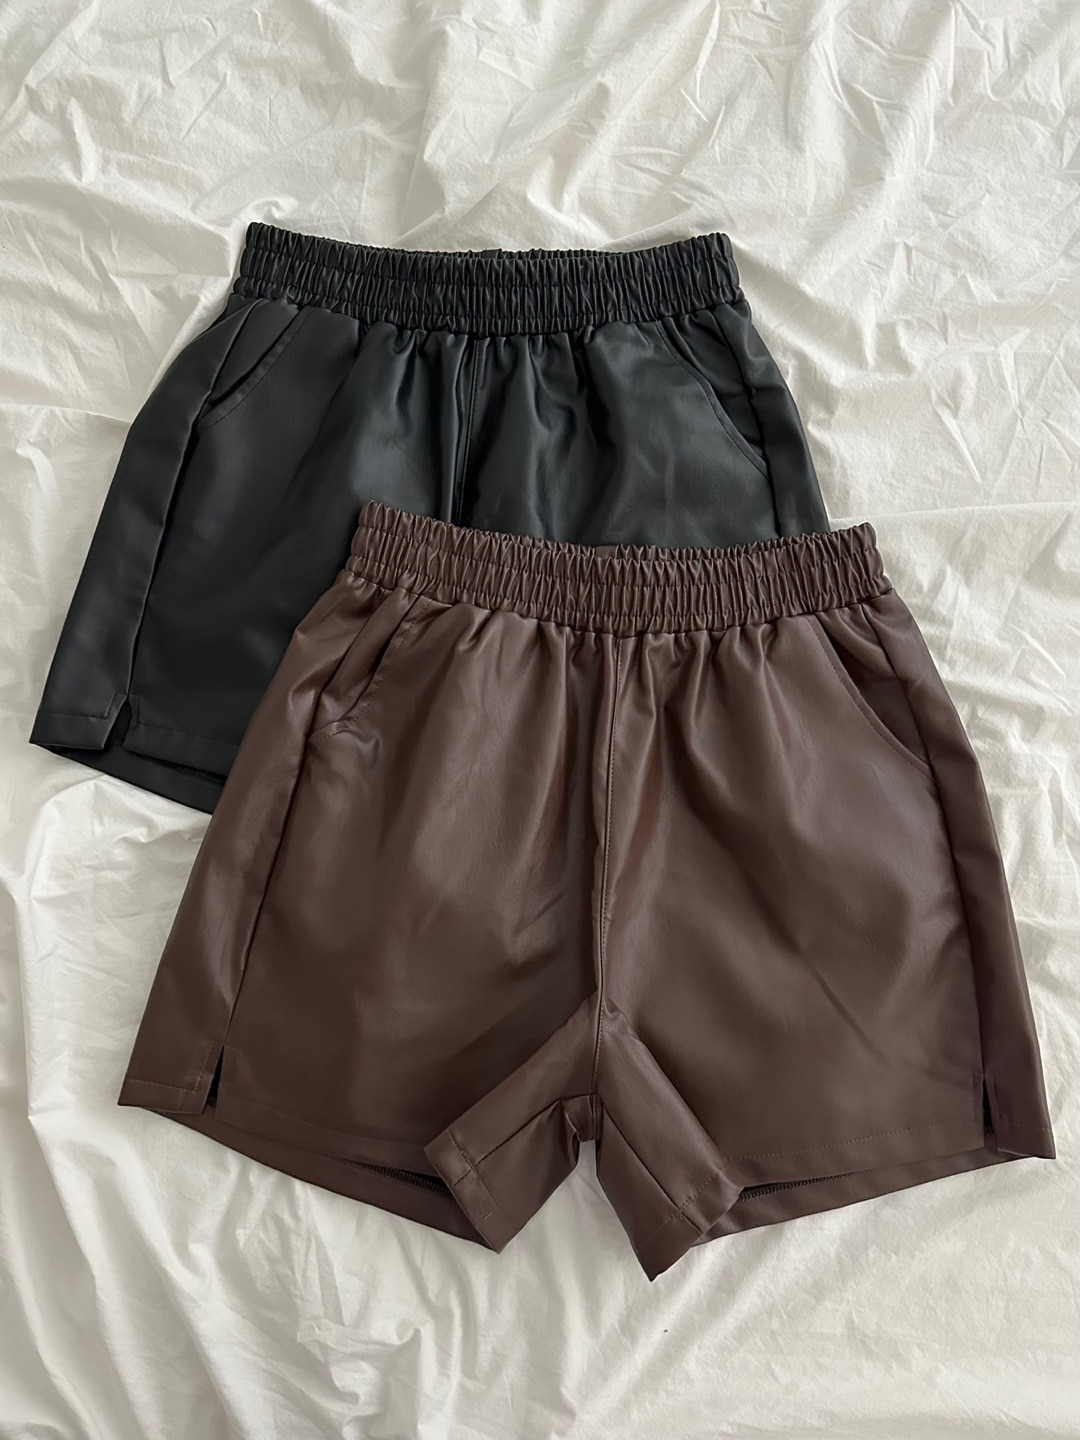 Eco leather banding shorts